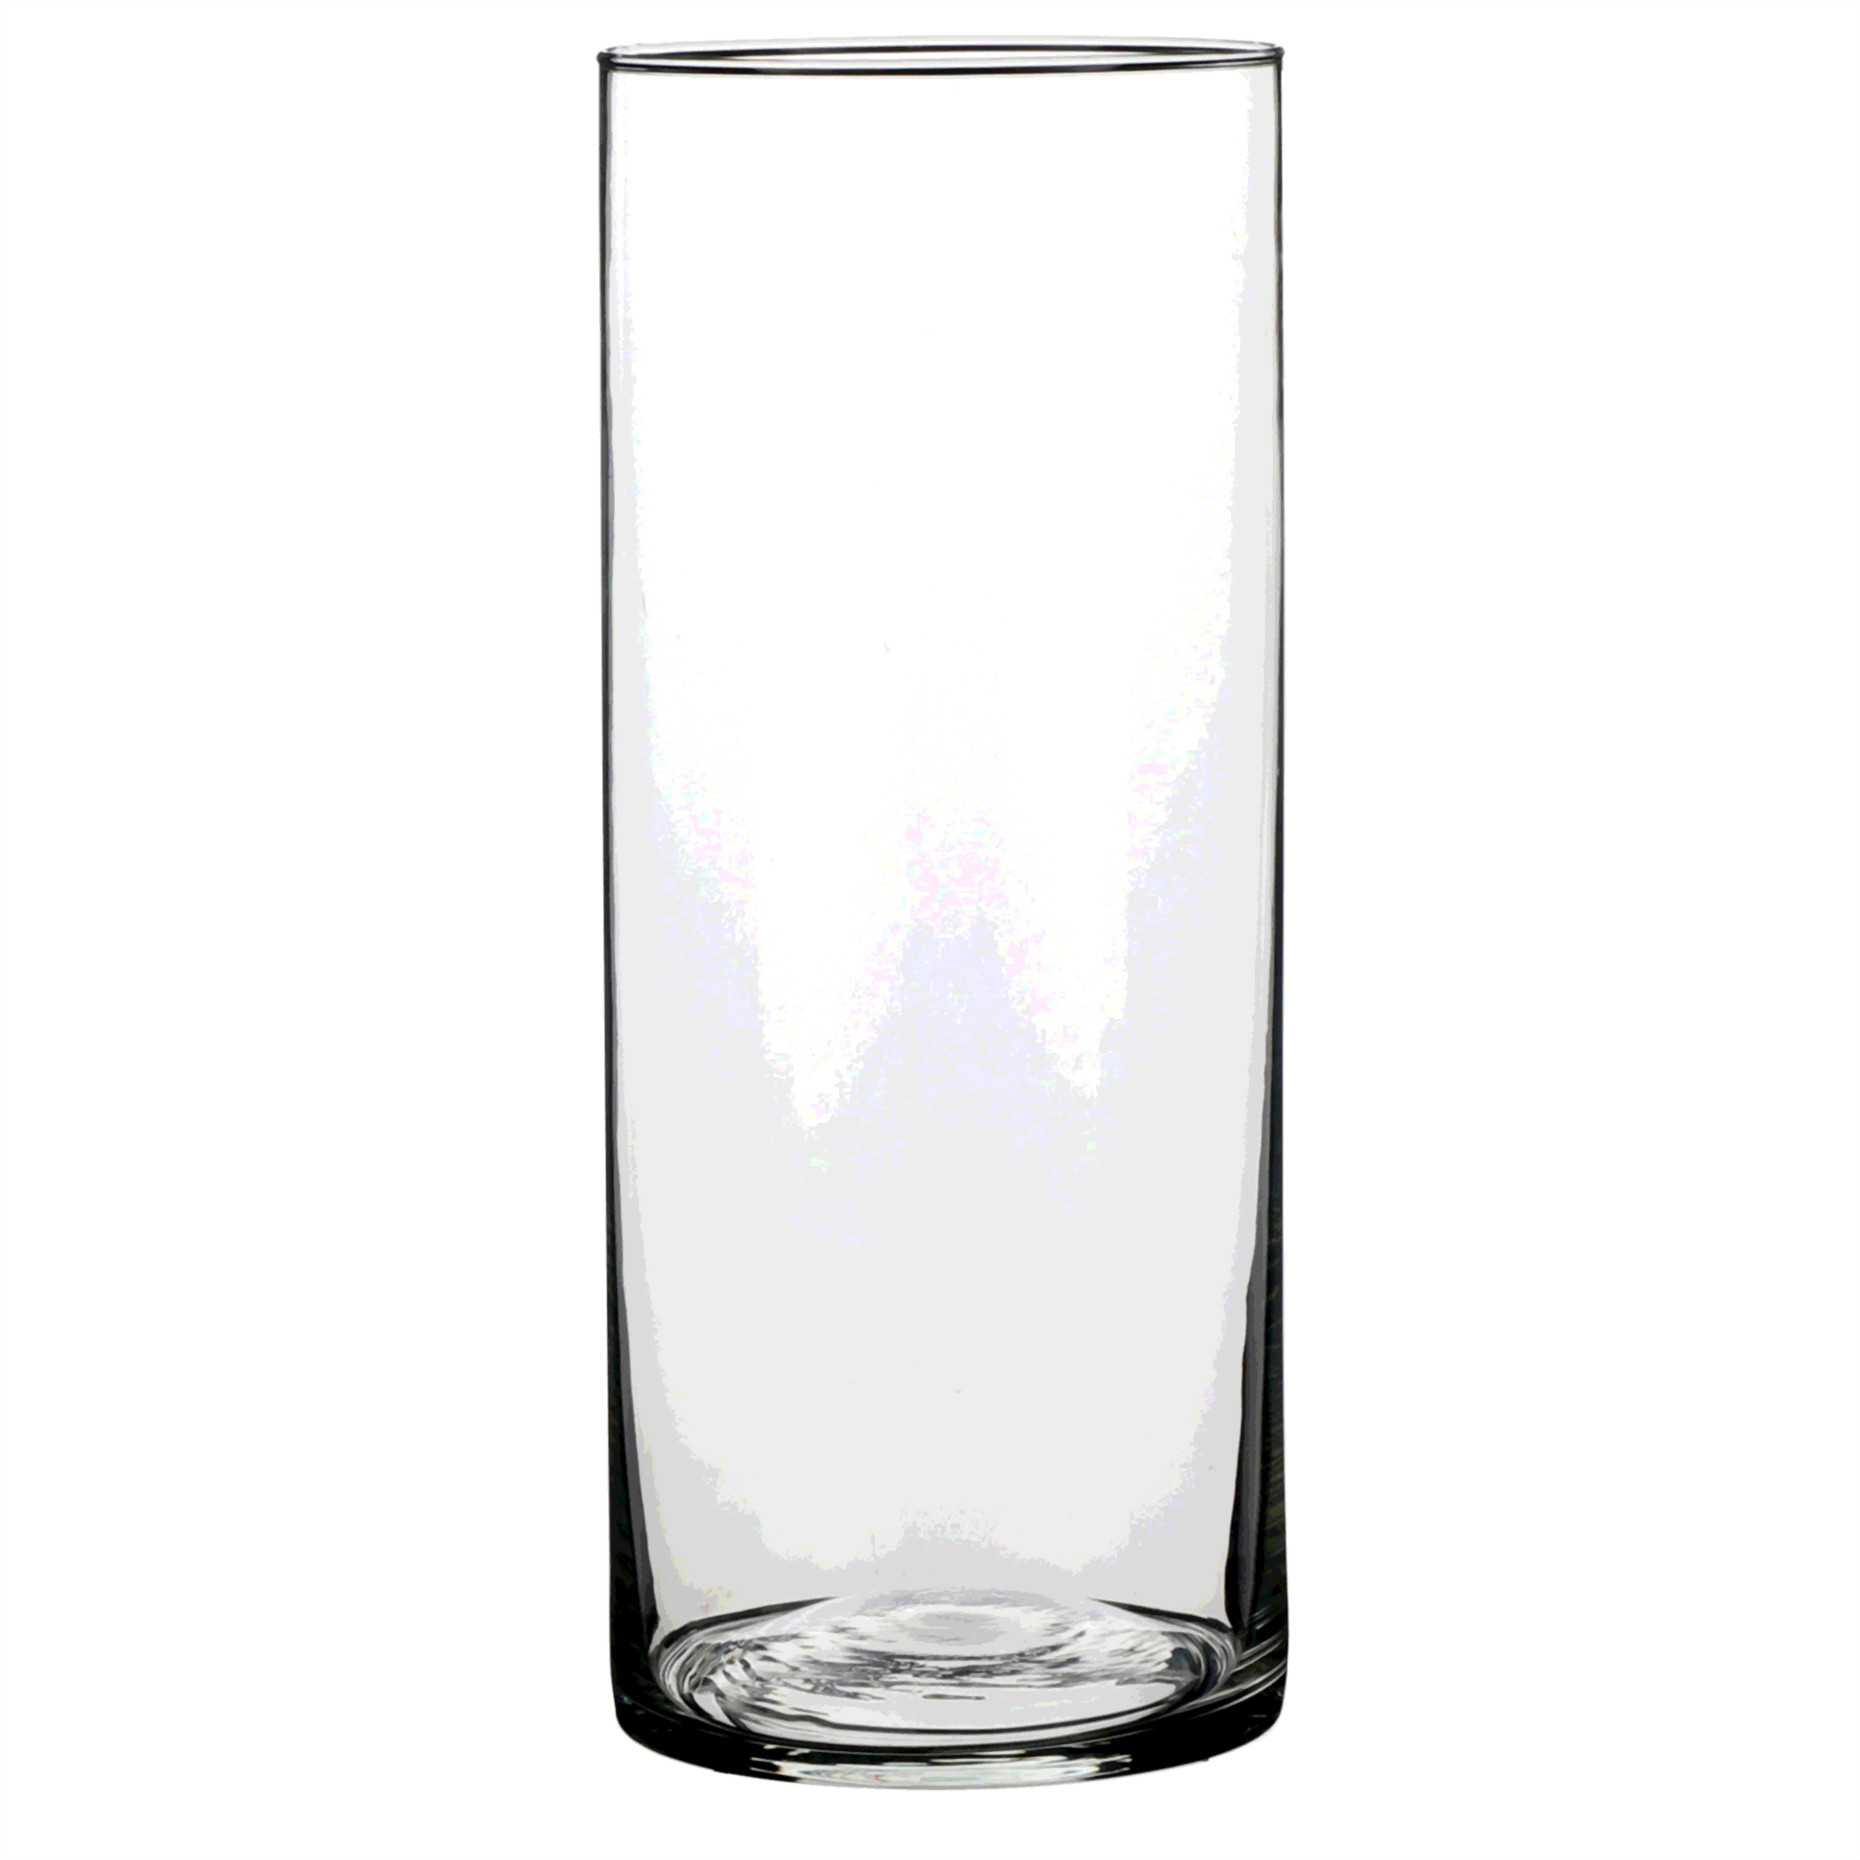 1x Glazen cilinder vaas/vazen 25 cm rond